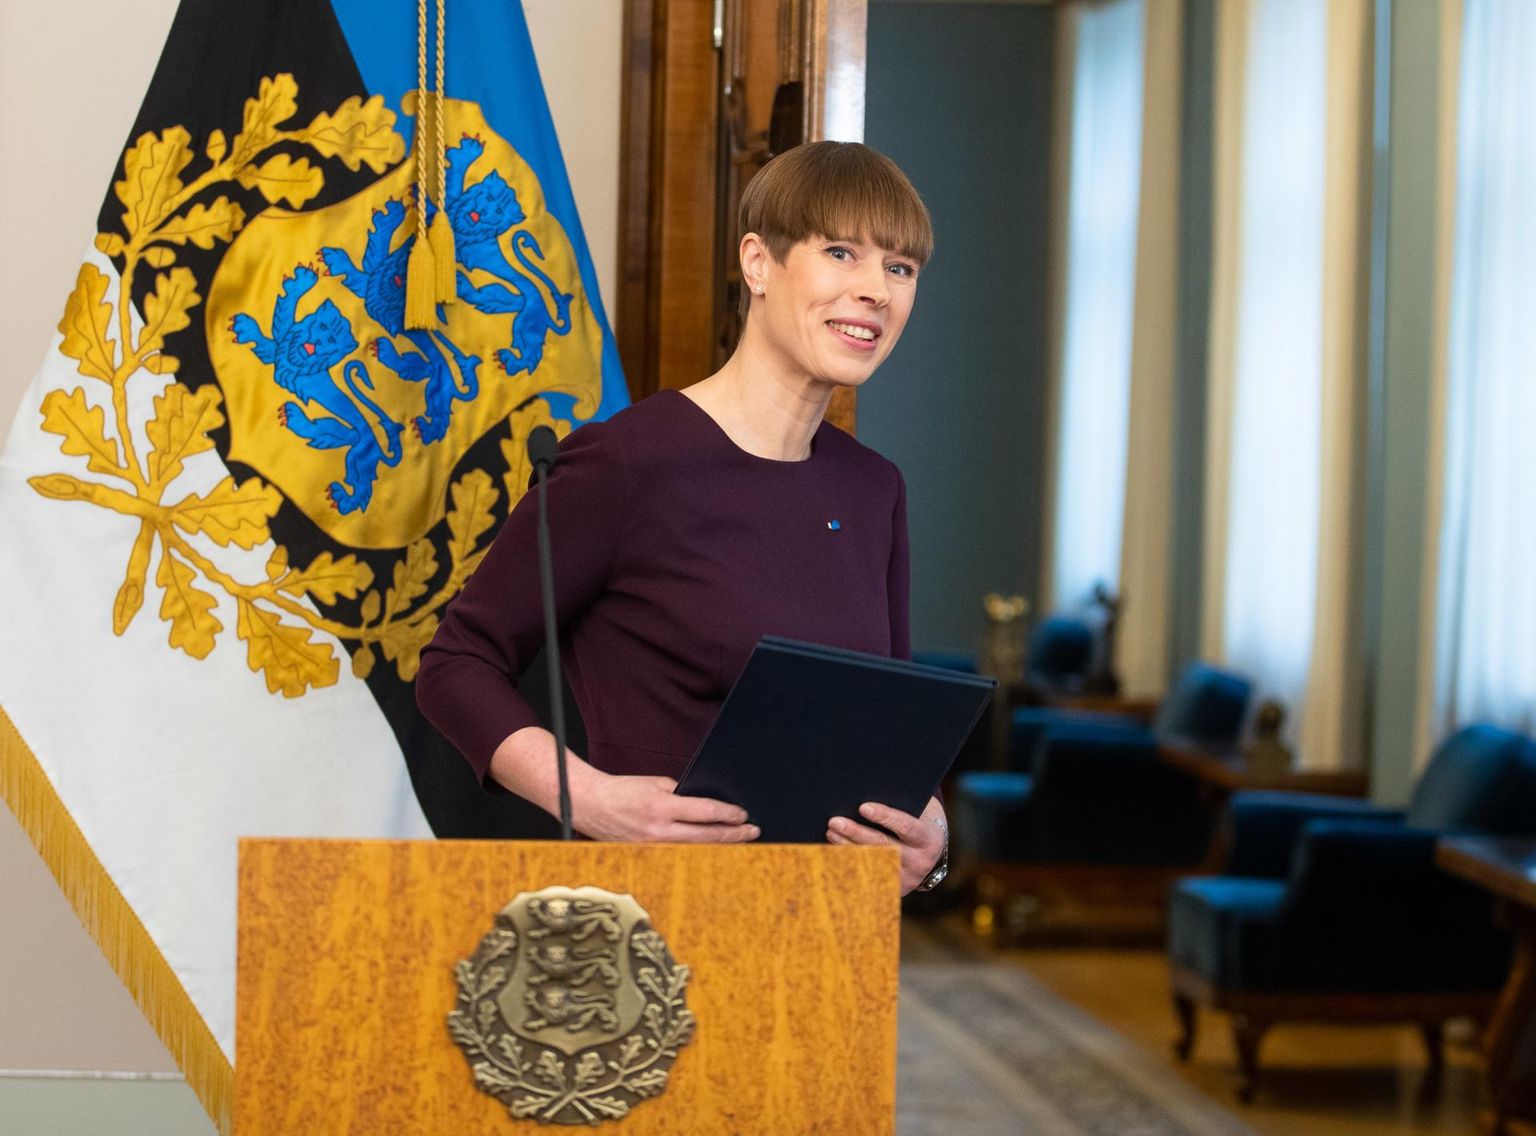 President Kersti Kaljulaid teatas eile, et ei kuuluta pensionireformi seadust välja. Puldist lahkudes soovis ta kõigile head nädalavahetust.